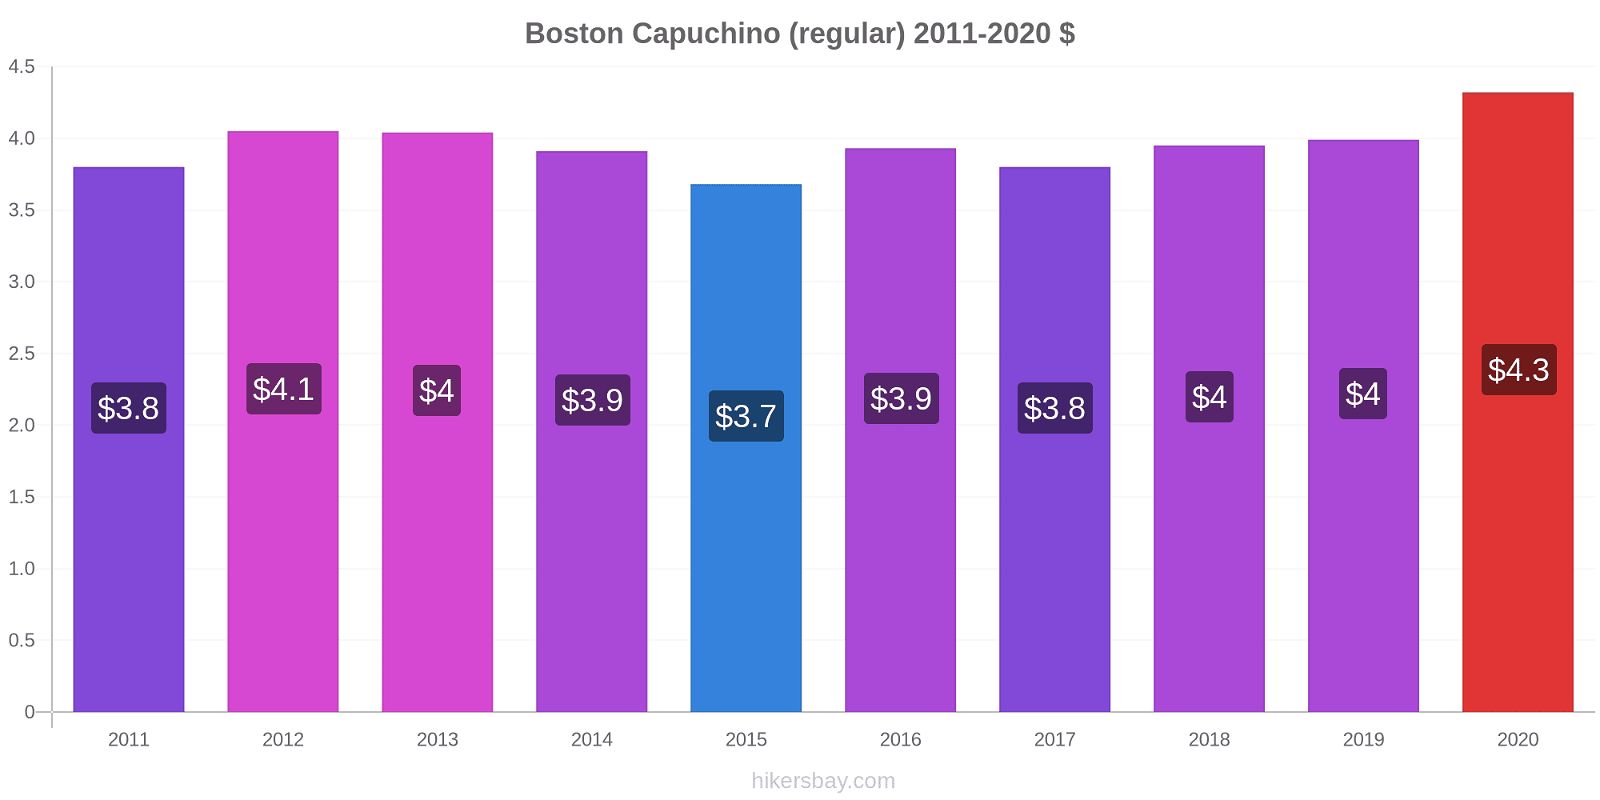 Boston cambios de precios Capuchino (regular) hikersbay.com